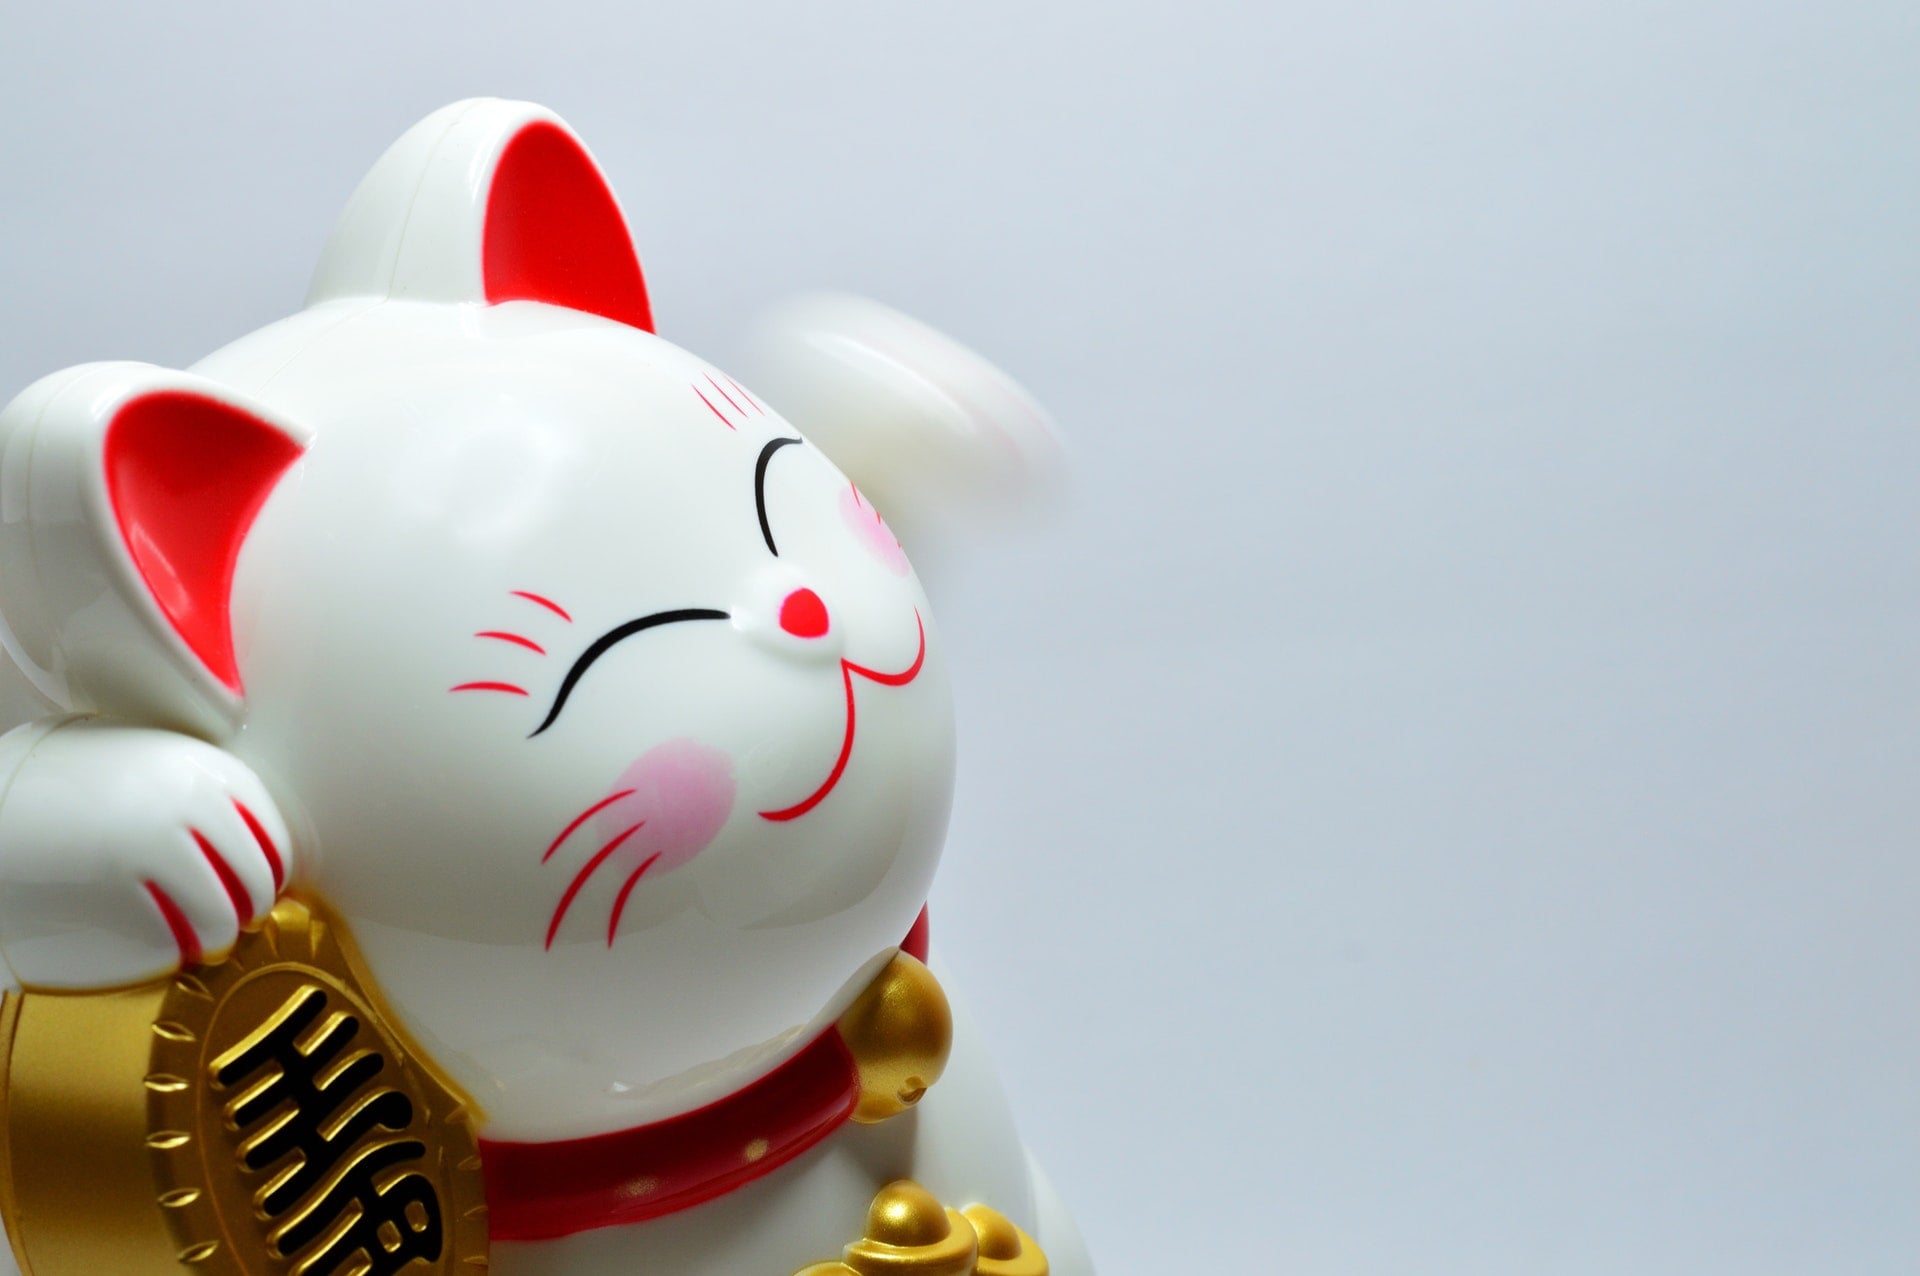 民國 108 年 11、12 月統一發票號碼中獎號碼、獎金兌獎說明 2019 japanese lucky coin cat